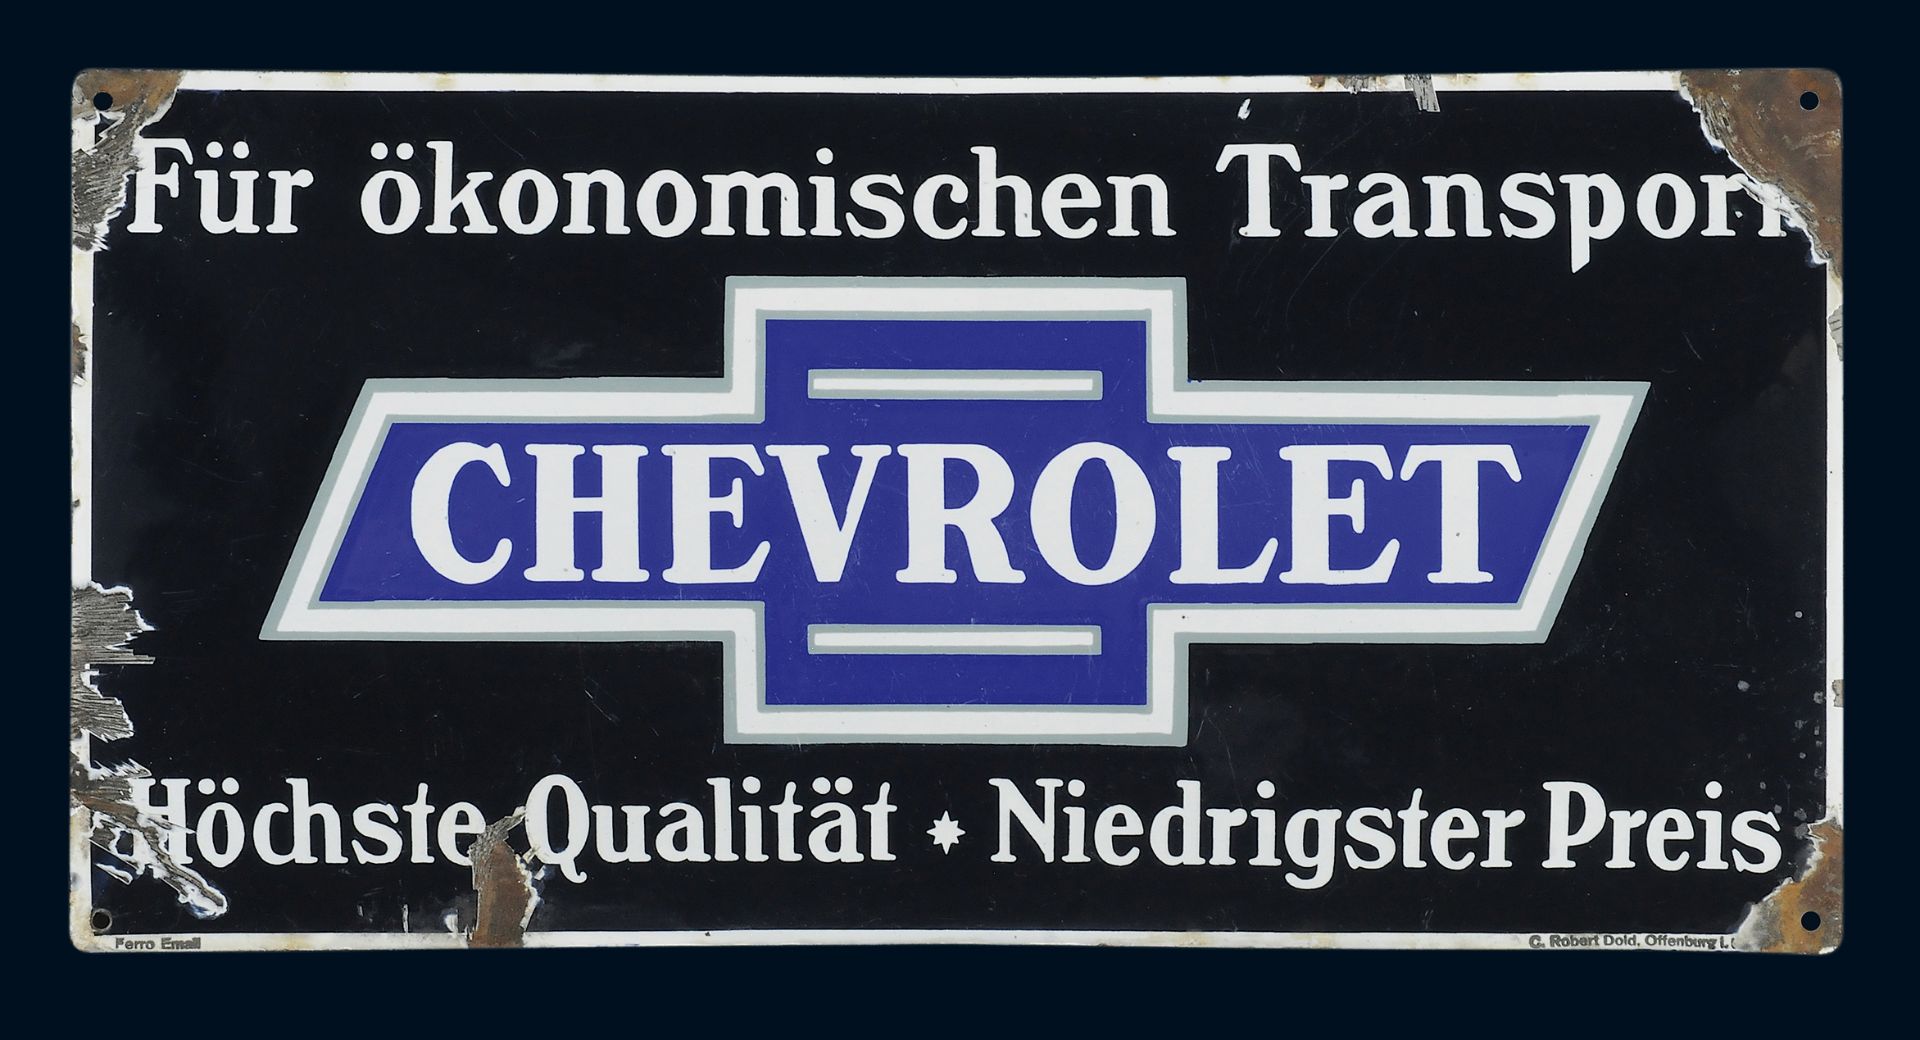 Chevrolet für ökonomischen Transport